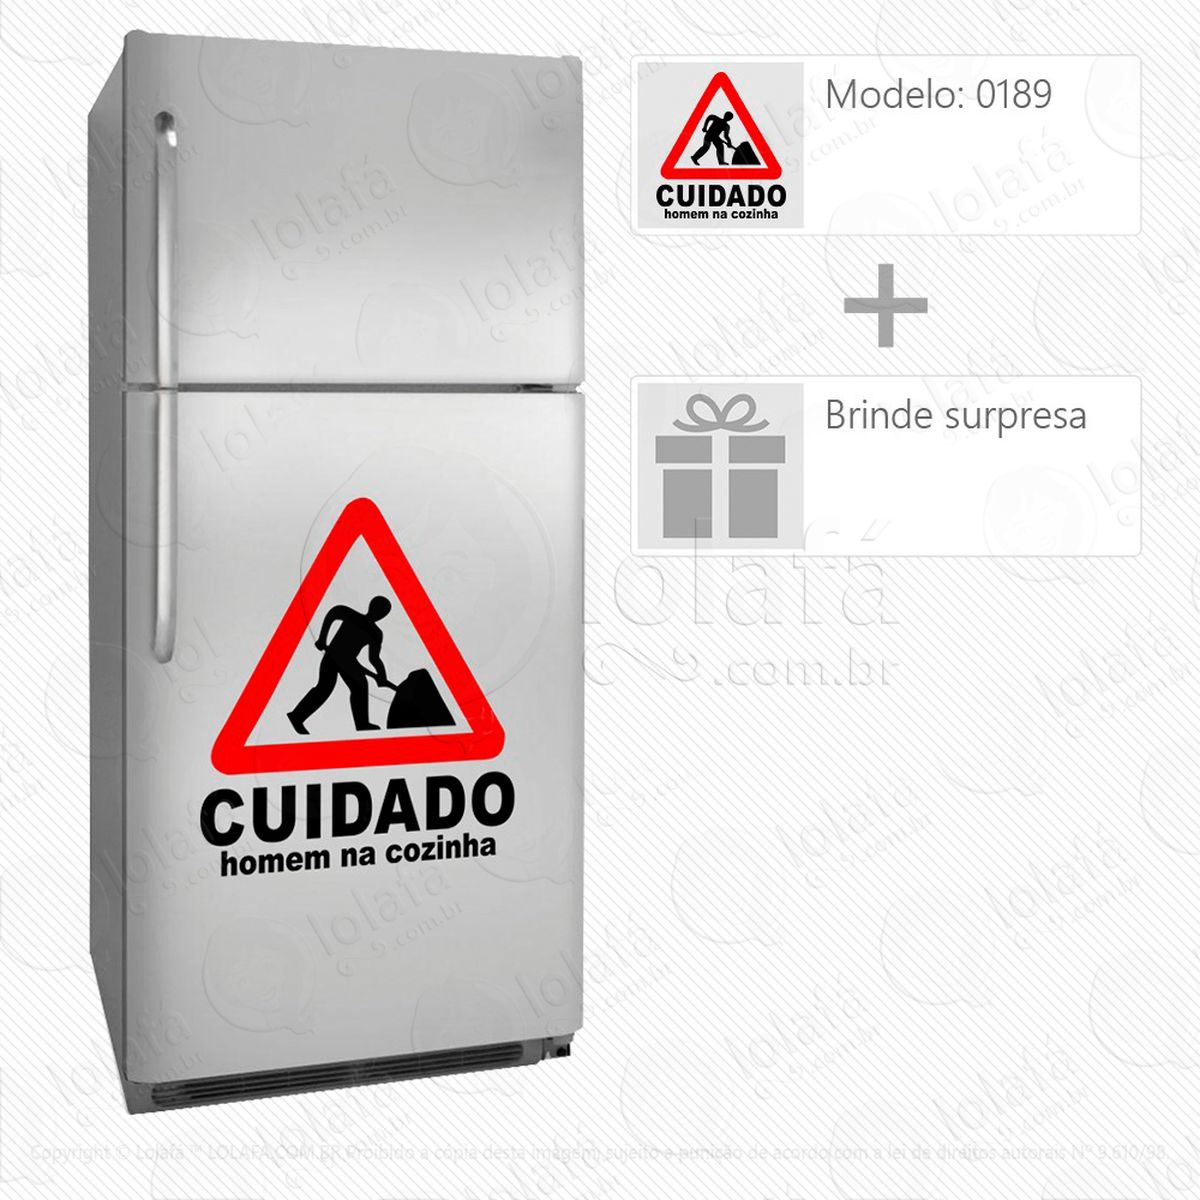 placa adesivo para geladeira e frigobar - mod:189